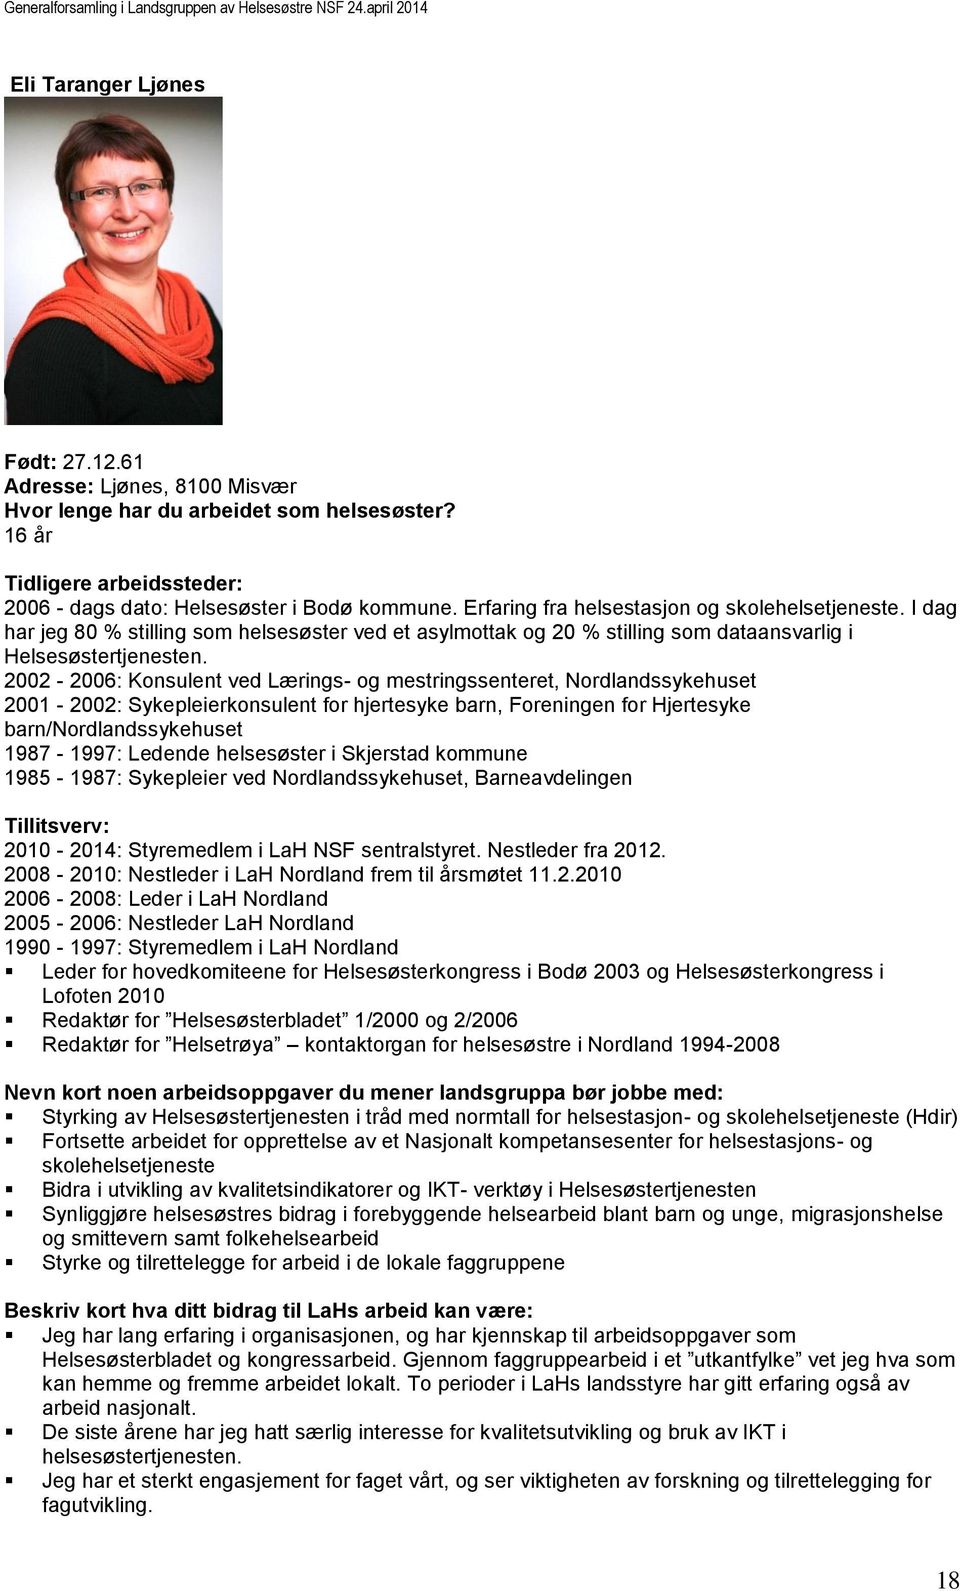 2002-2006: Konsulent ved Lærings- og mestringssenteret, Nordlandssykehuset 2001-2002: Sykepleierkonsulent for hjertesyke barn, Foreningen for Hjertesyke barn/nordlandssykehuset 1987-1997: Ledende